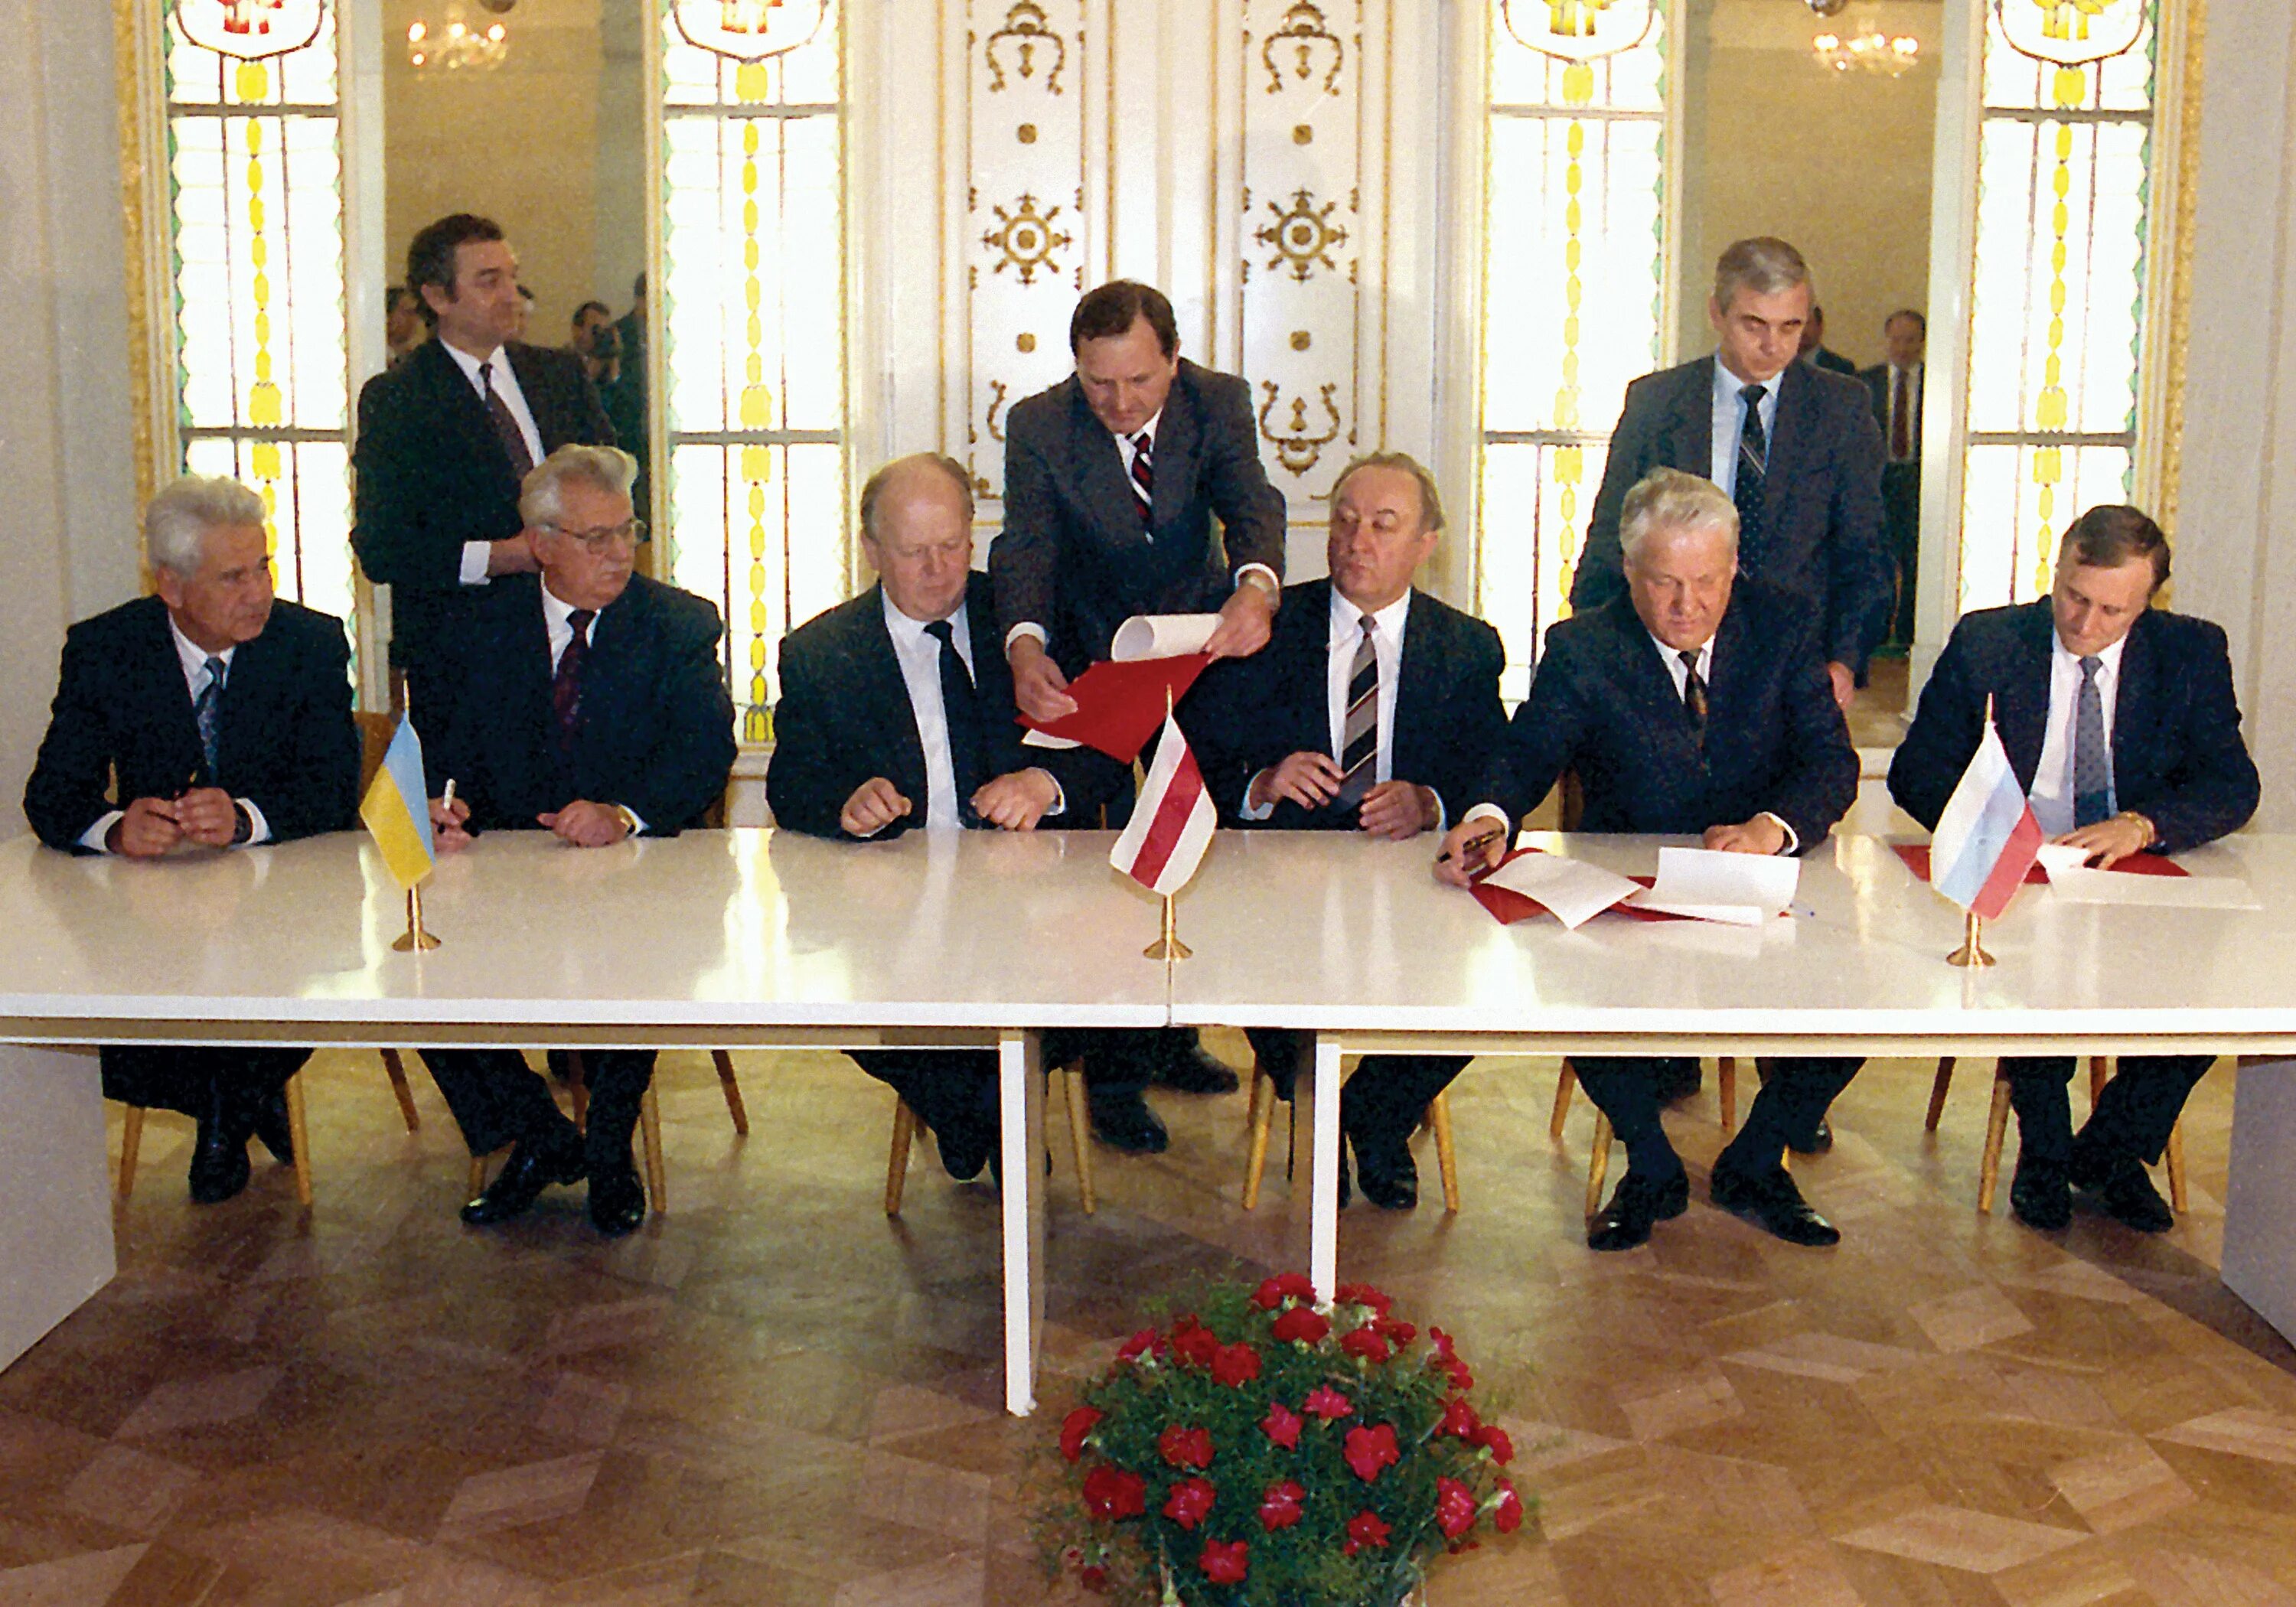 В каком году подписан договор про. Ельцин в Беловежской пуще подписали СНГ. Беловежская пуща Вискули 1991. 8 Декабря 1991 года в Беловежской пуще было подписано соглашение о. Ельцин Кравчук и Шушкевич в Беловежской пуще.